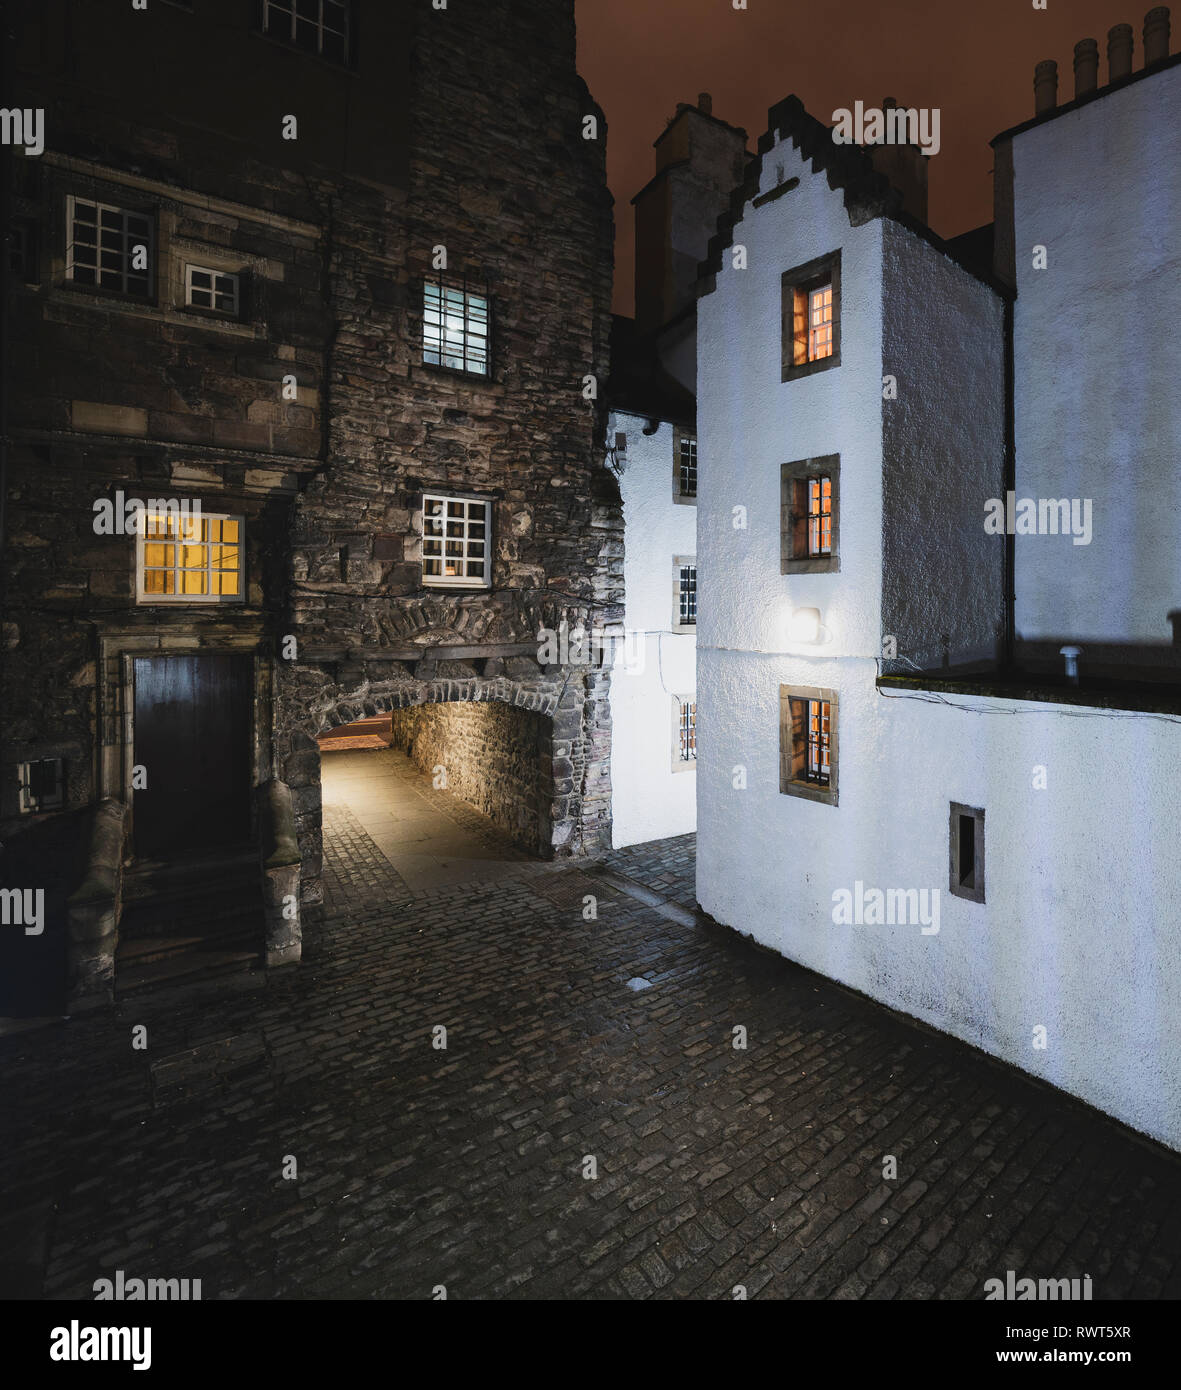 Vue de nuit Boulangerie Fermer sur Royal Mile d'Édimbourg, en Écosse au Royaume-Uni. Position de l'Outlander comme fictive Carfax Fermer. L'Écosse, Royaume-Uni Banque D'Images